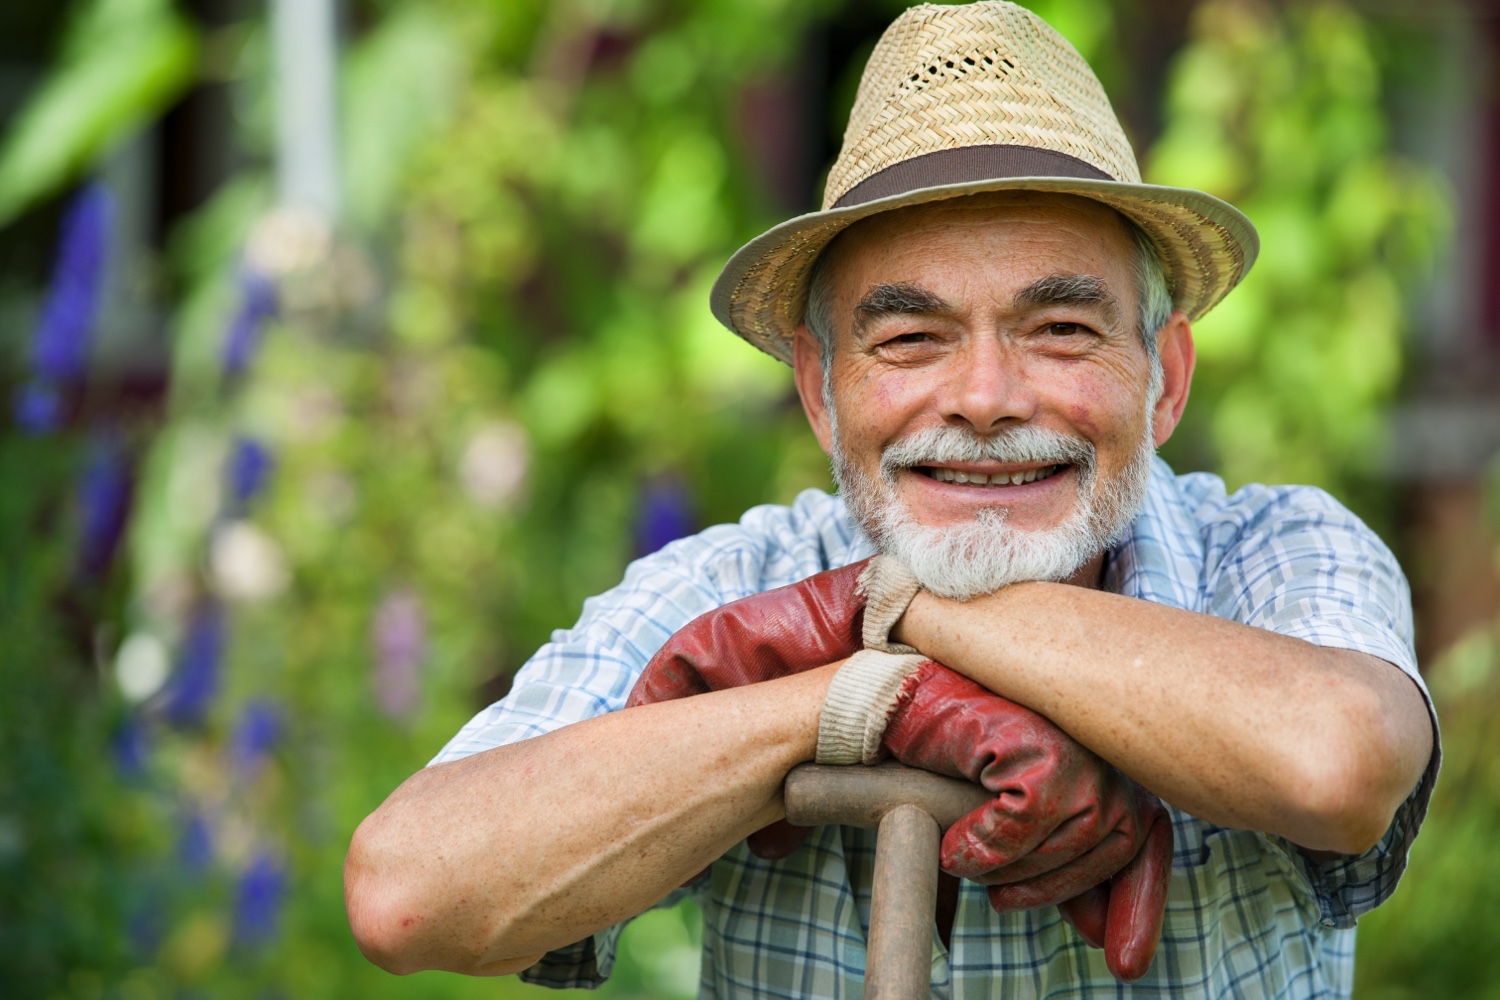 Senior man wearing a hat and gardening gloves in a garden